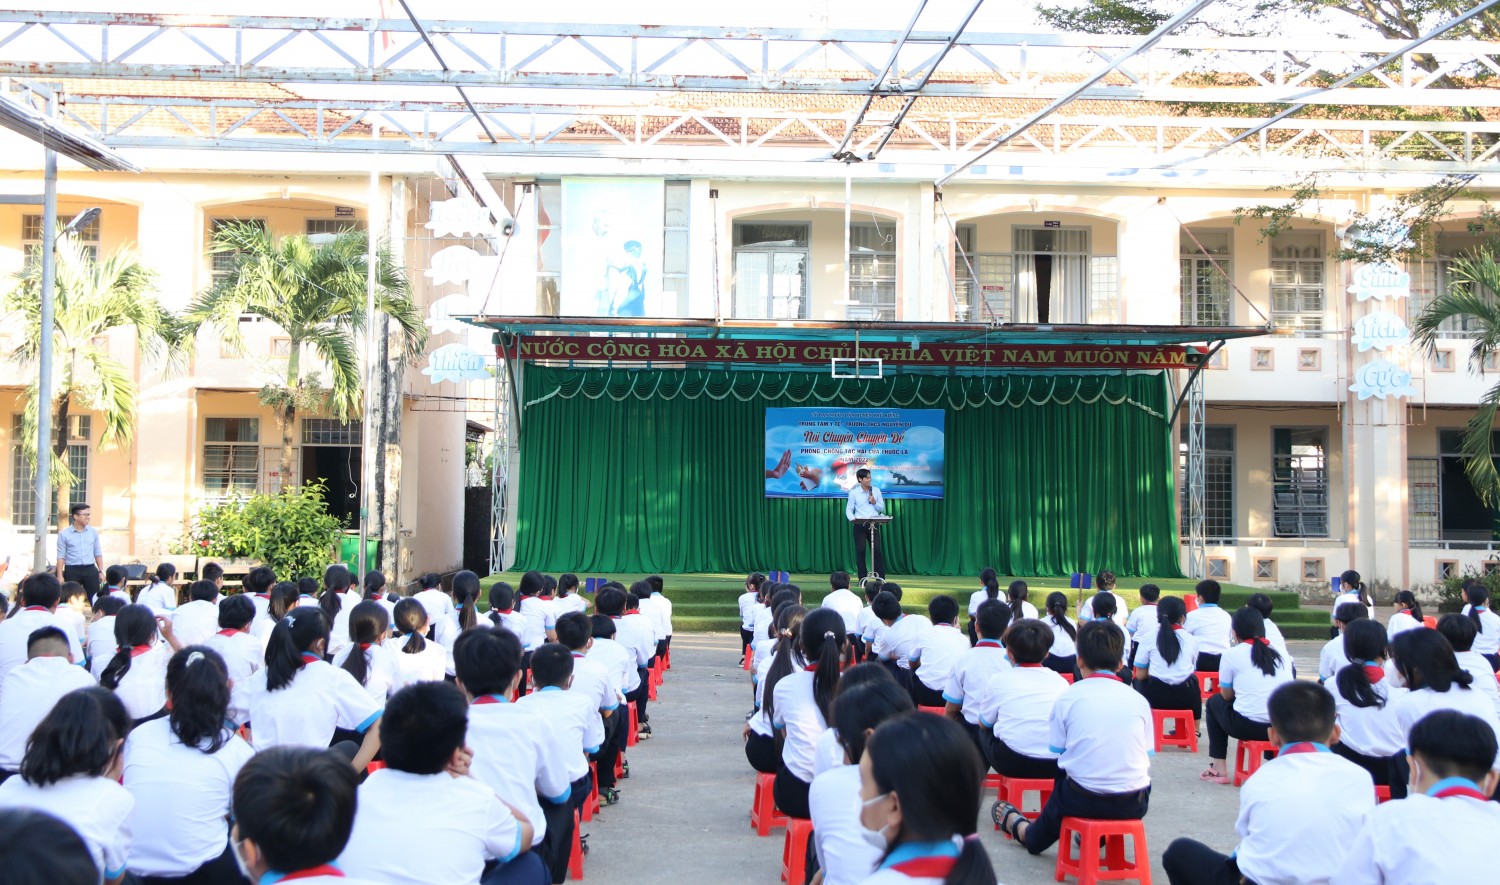 Phú Riềng: Tổ chức nói chuyện chuyên đề “Phòng chống tác hại thuốc lá” cho các em học sinh trường THCS Nguyễn Du năm 2022